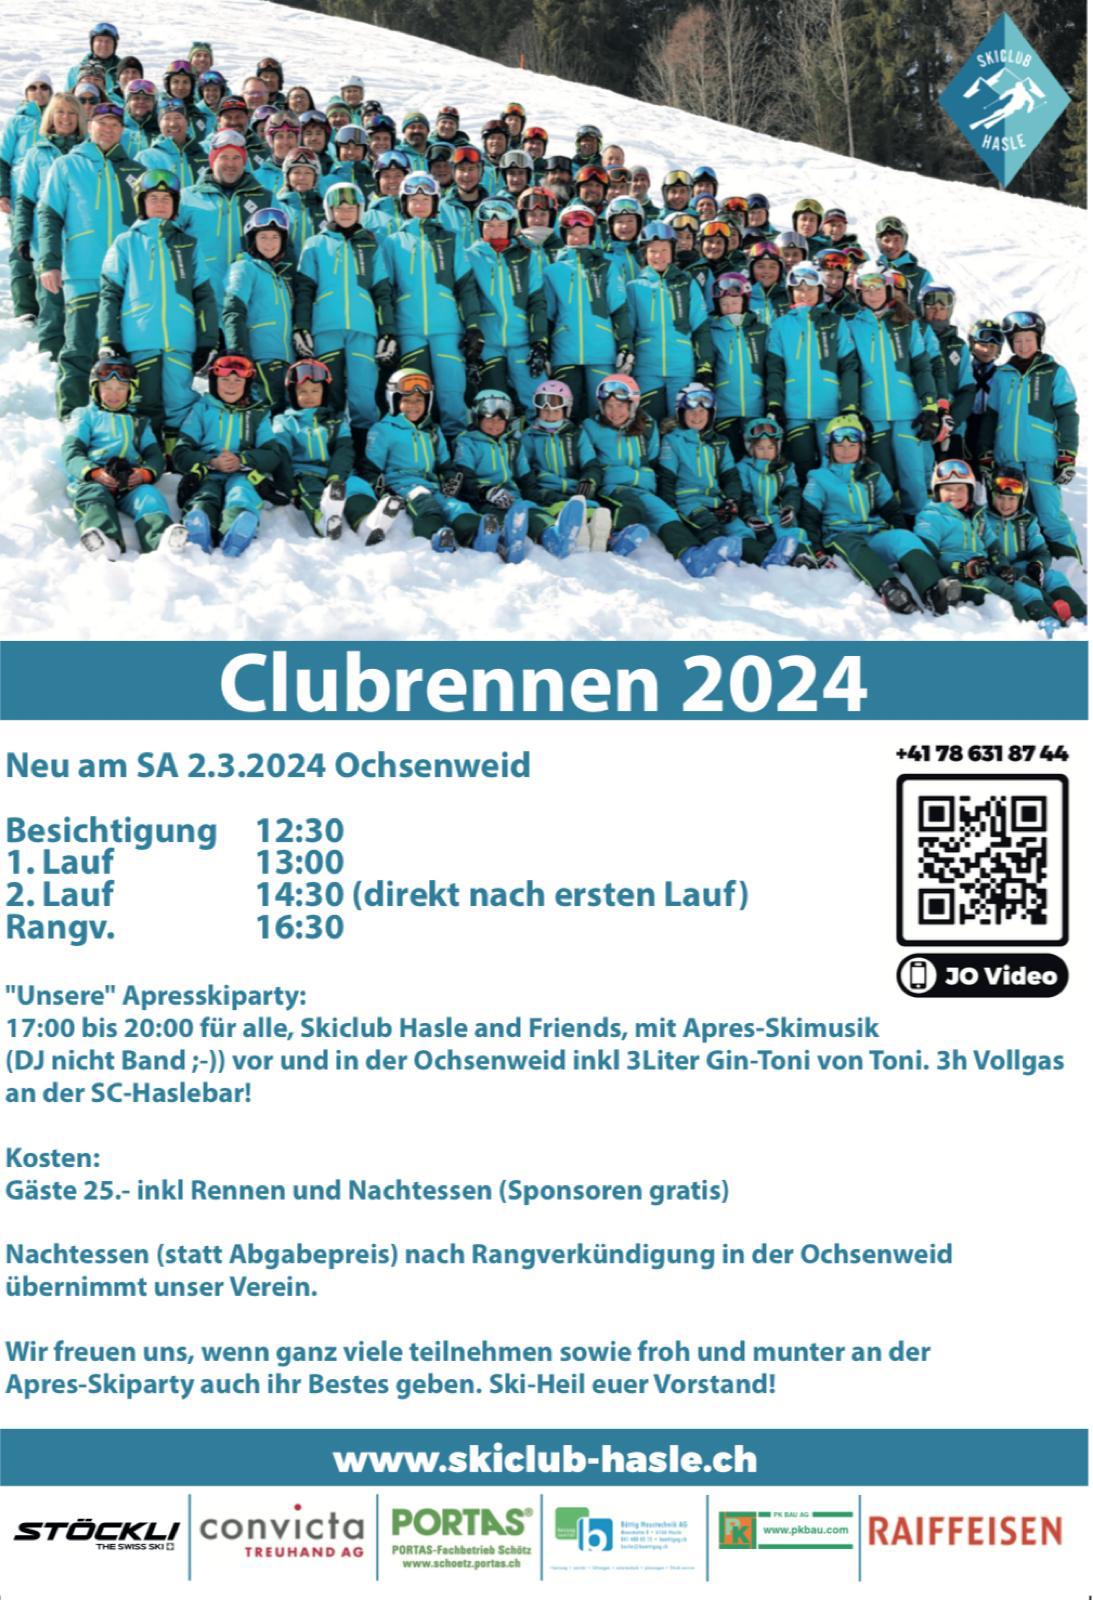 (c) Skiclub-hasle.ch